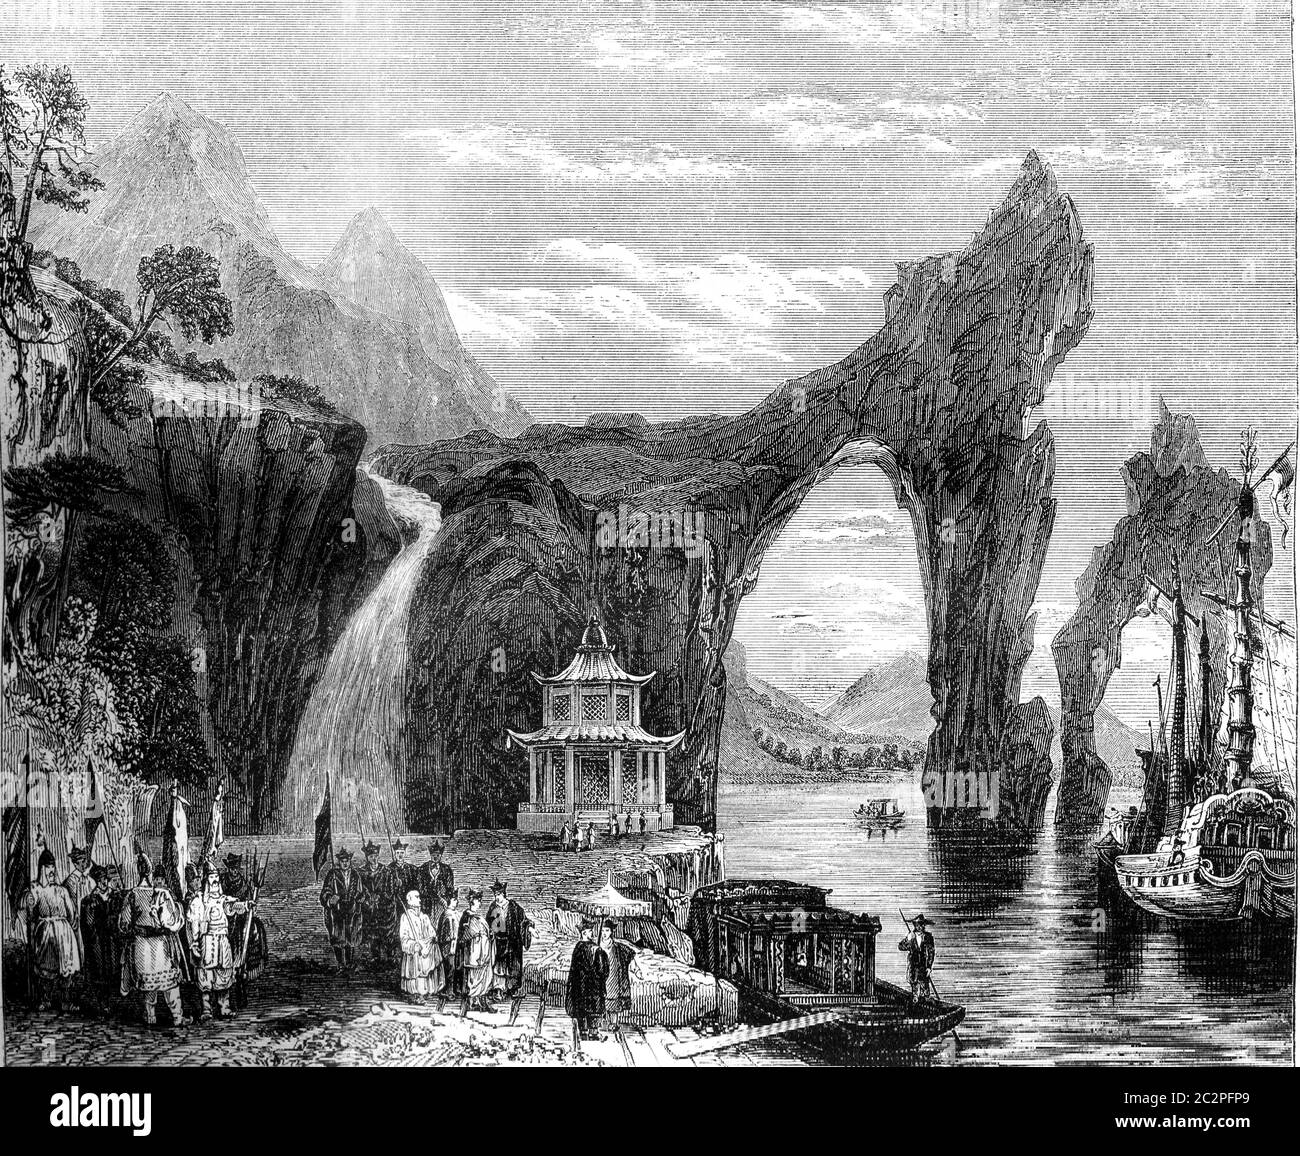 Chinesische Landschaft, Blick auf Tai-ho, Vintage gravierte Illustration. Magasin Pittoresque 1845. Stockfoto